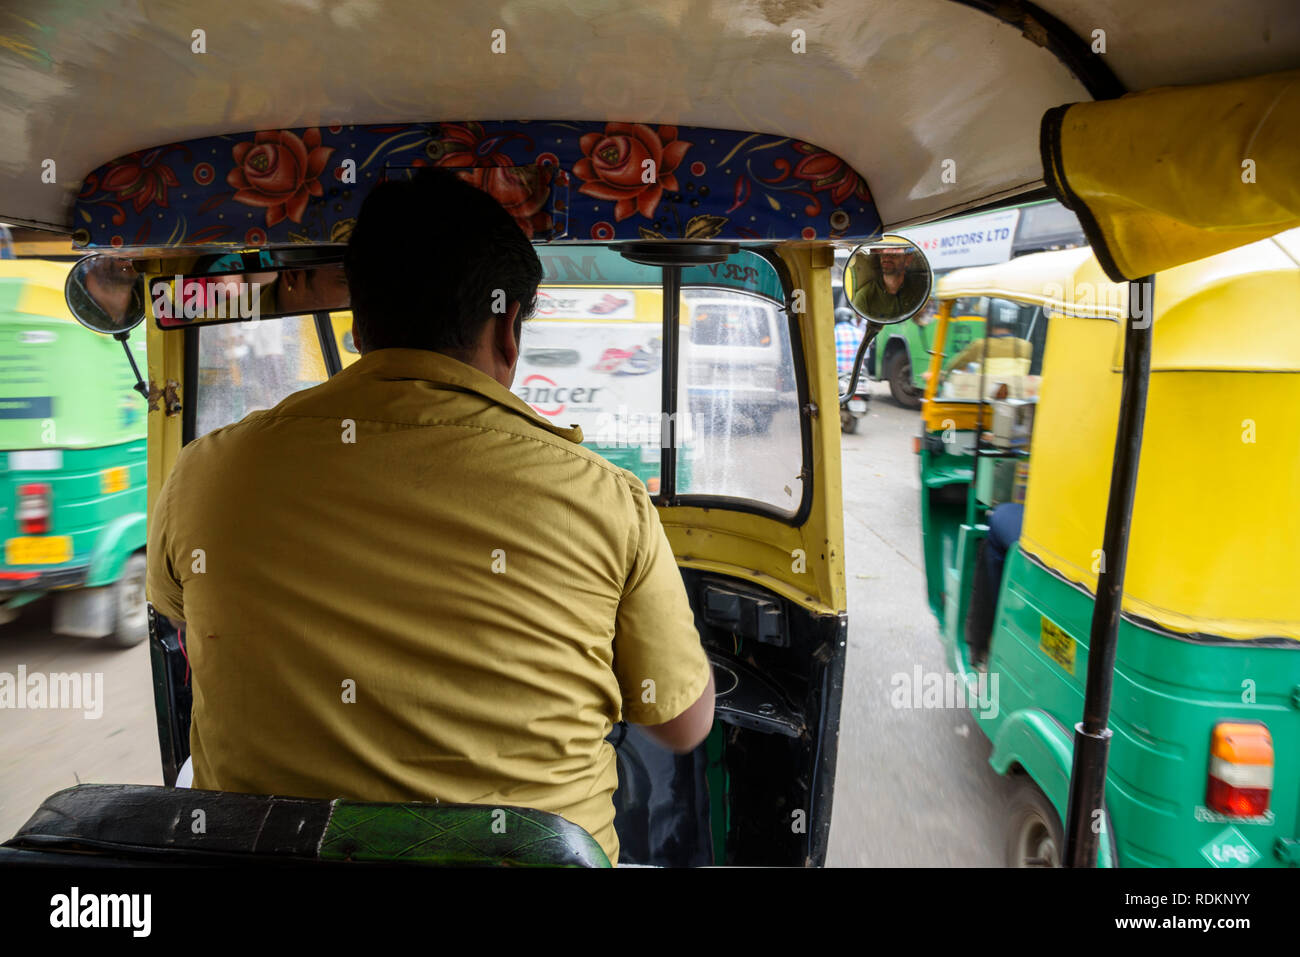 Autorickshaw ride, Banaglore, Bengaluru, Karnataka, India Stock Photo